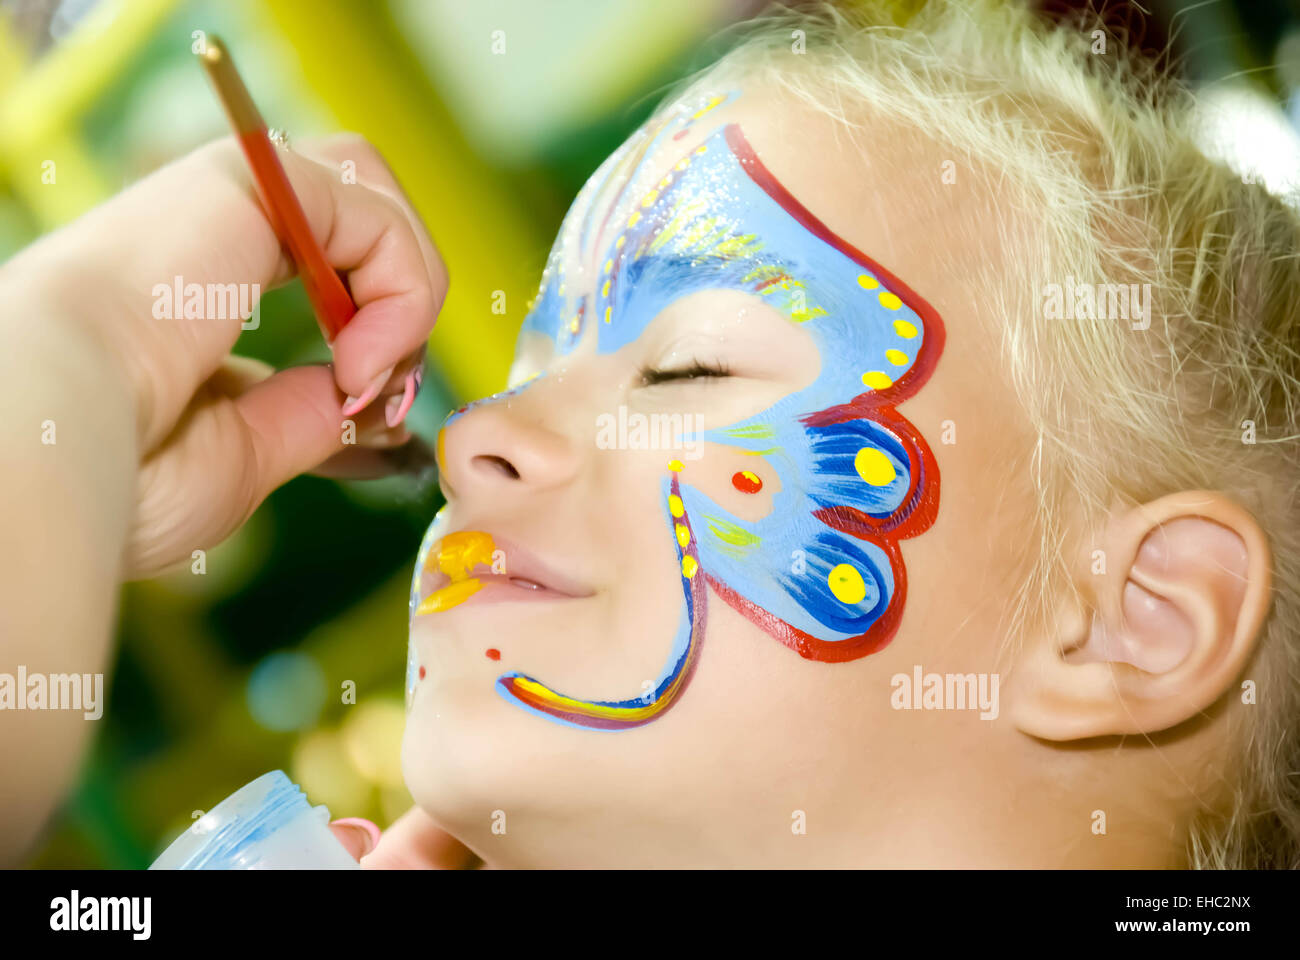 Bellissima ragazza con gli occhi blu con farfalla dipinta sul suo viso Foto Stock